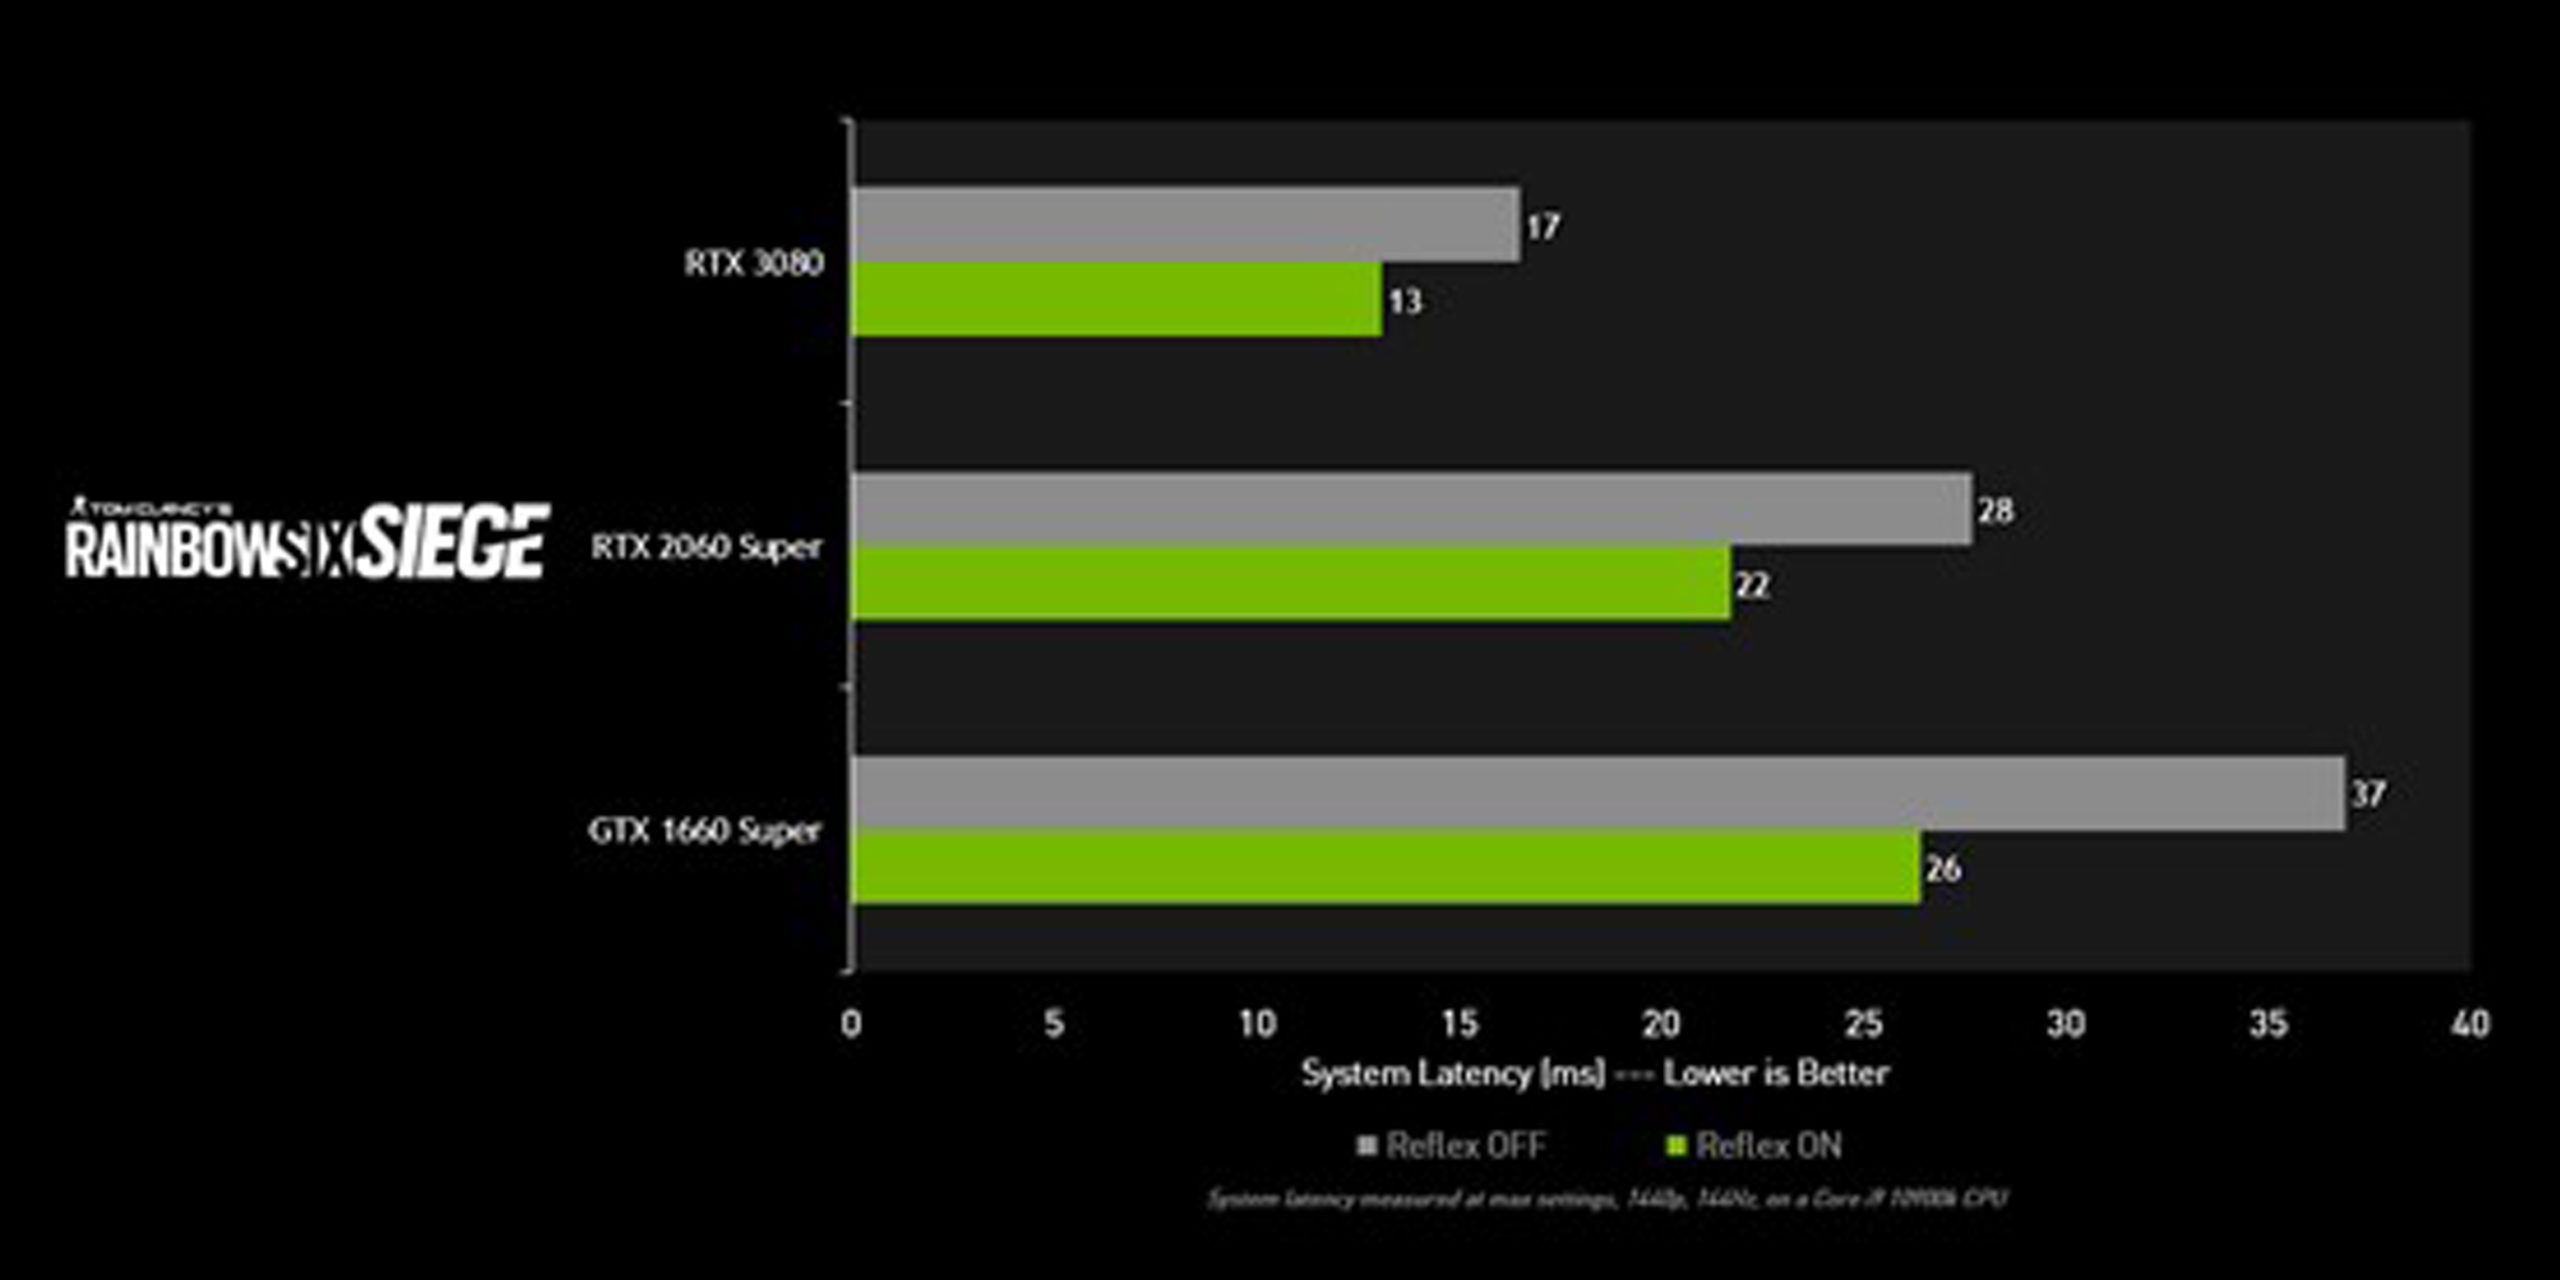 最新 Nvidia Game Ready 驅動程式為 虹彩六號 圍攻行動 降低多達30 系統延遲 Xfastest News